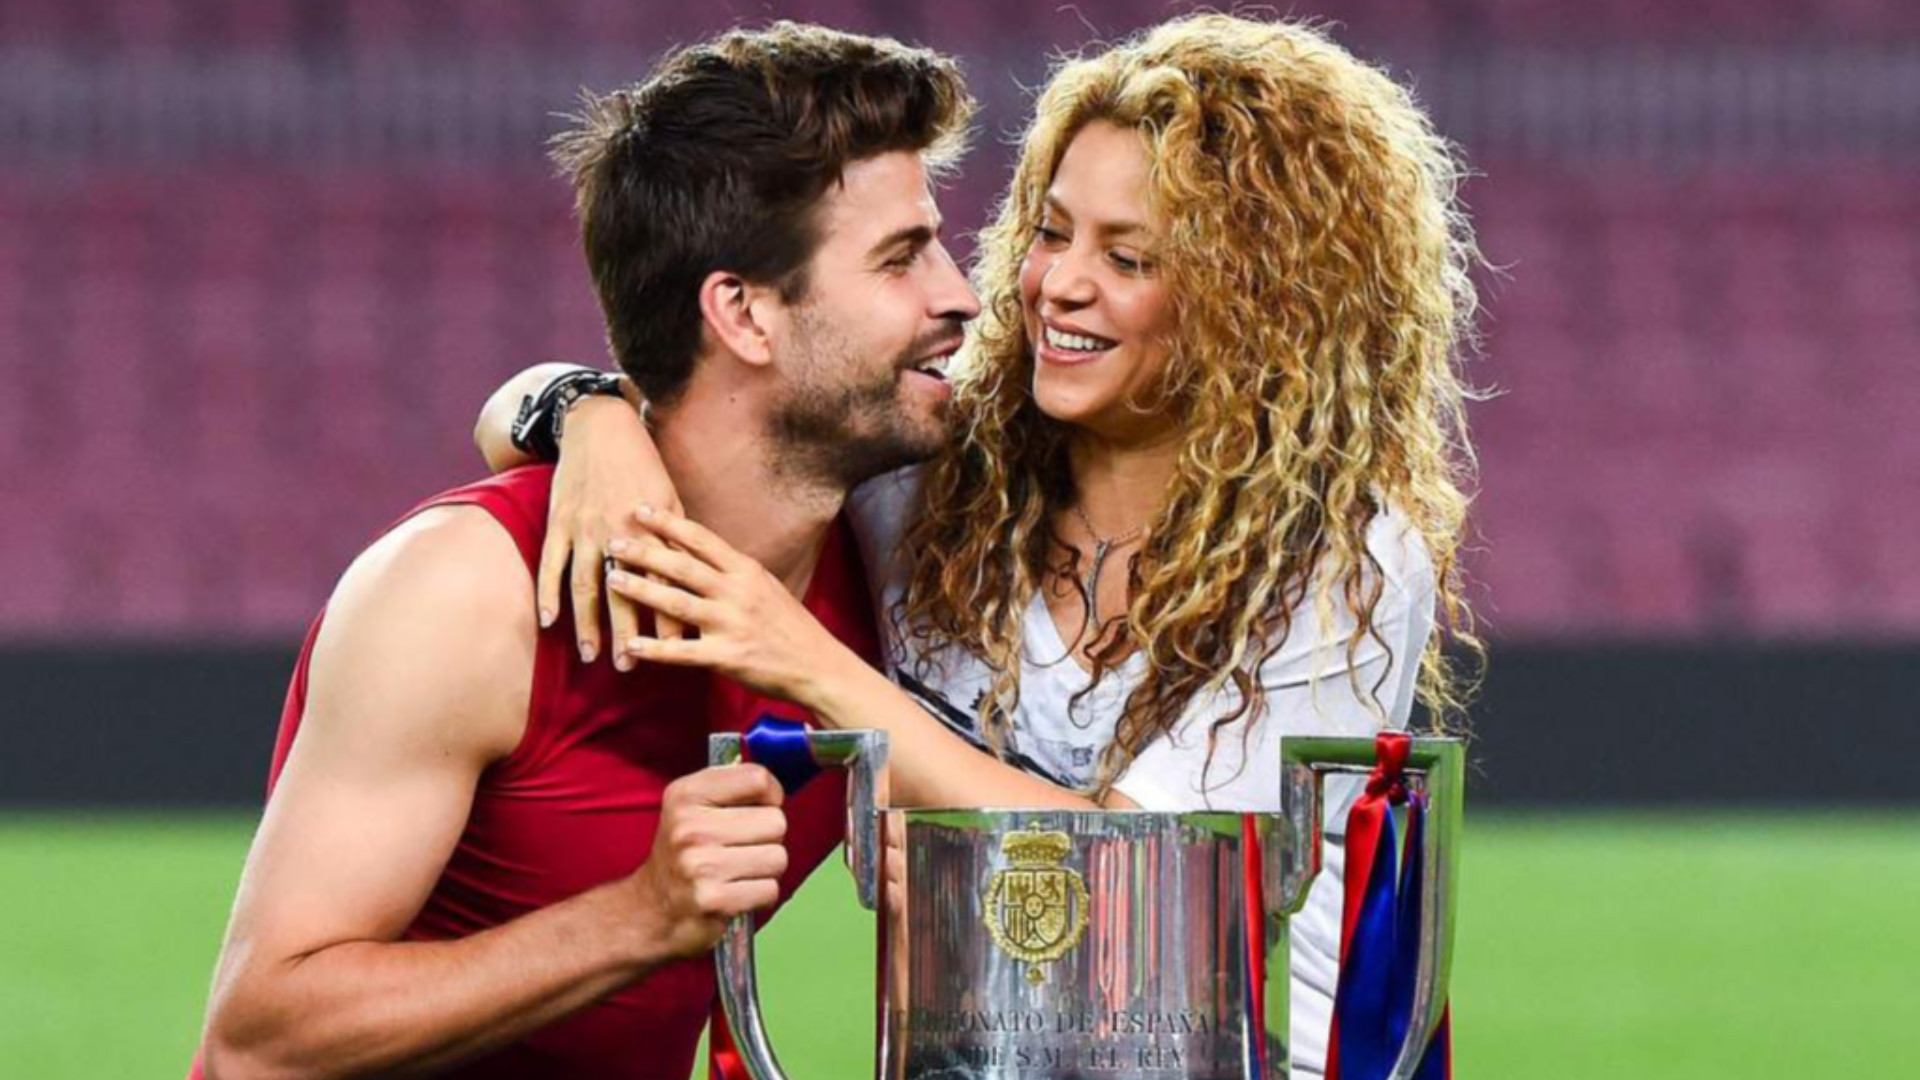 Shakira y Piqué mantienen una relación desde 2010, tienen dos hijos pero no están casados